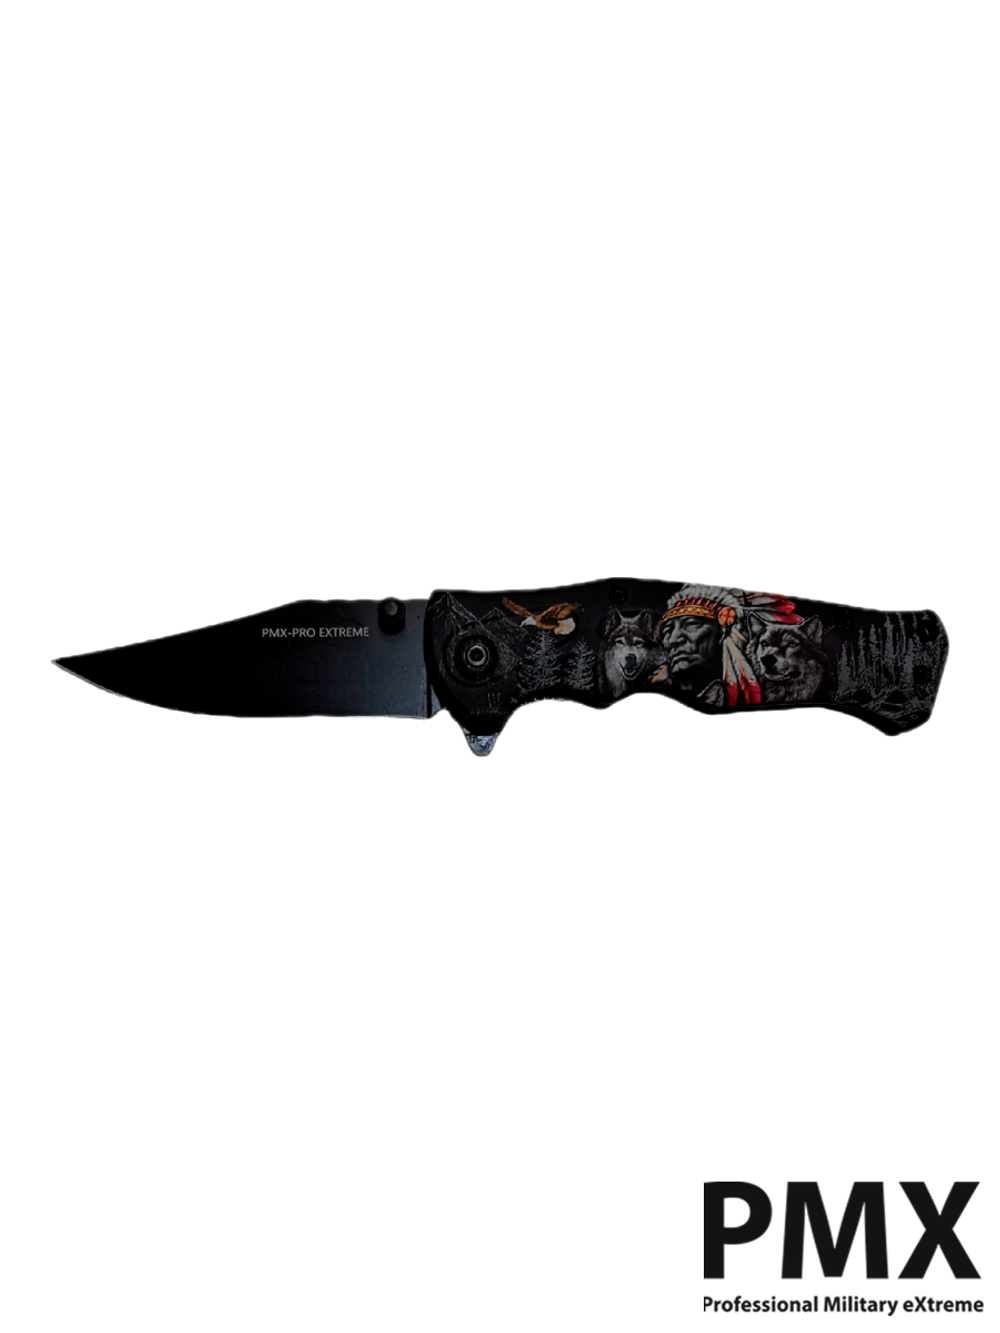 Нож складной PMX-PRO Extreme Special Series (PMX-050B) сталь AUS8. С индейцем и волками